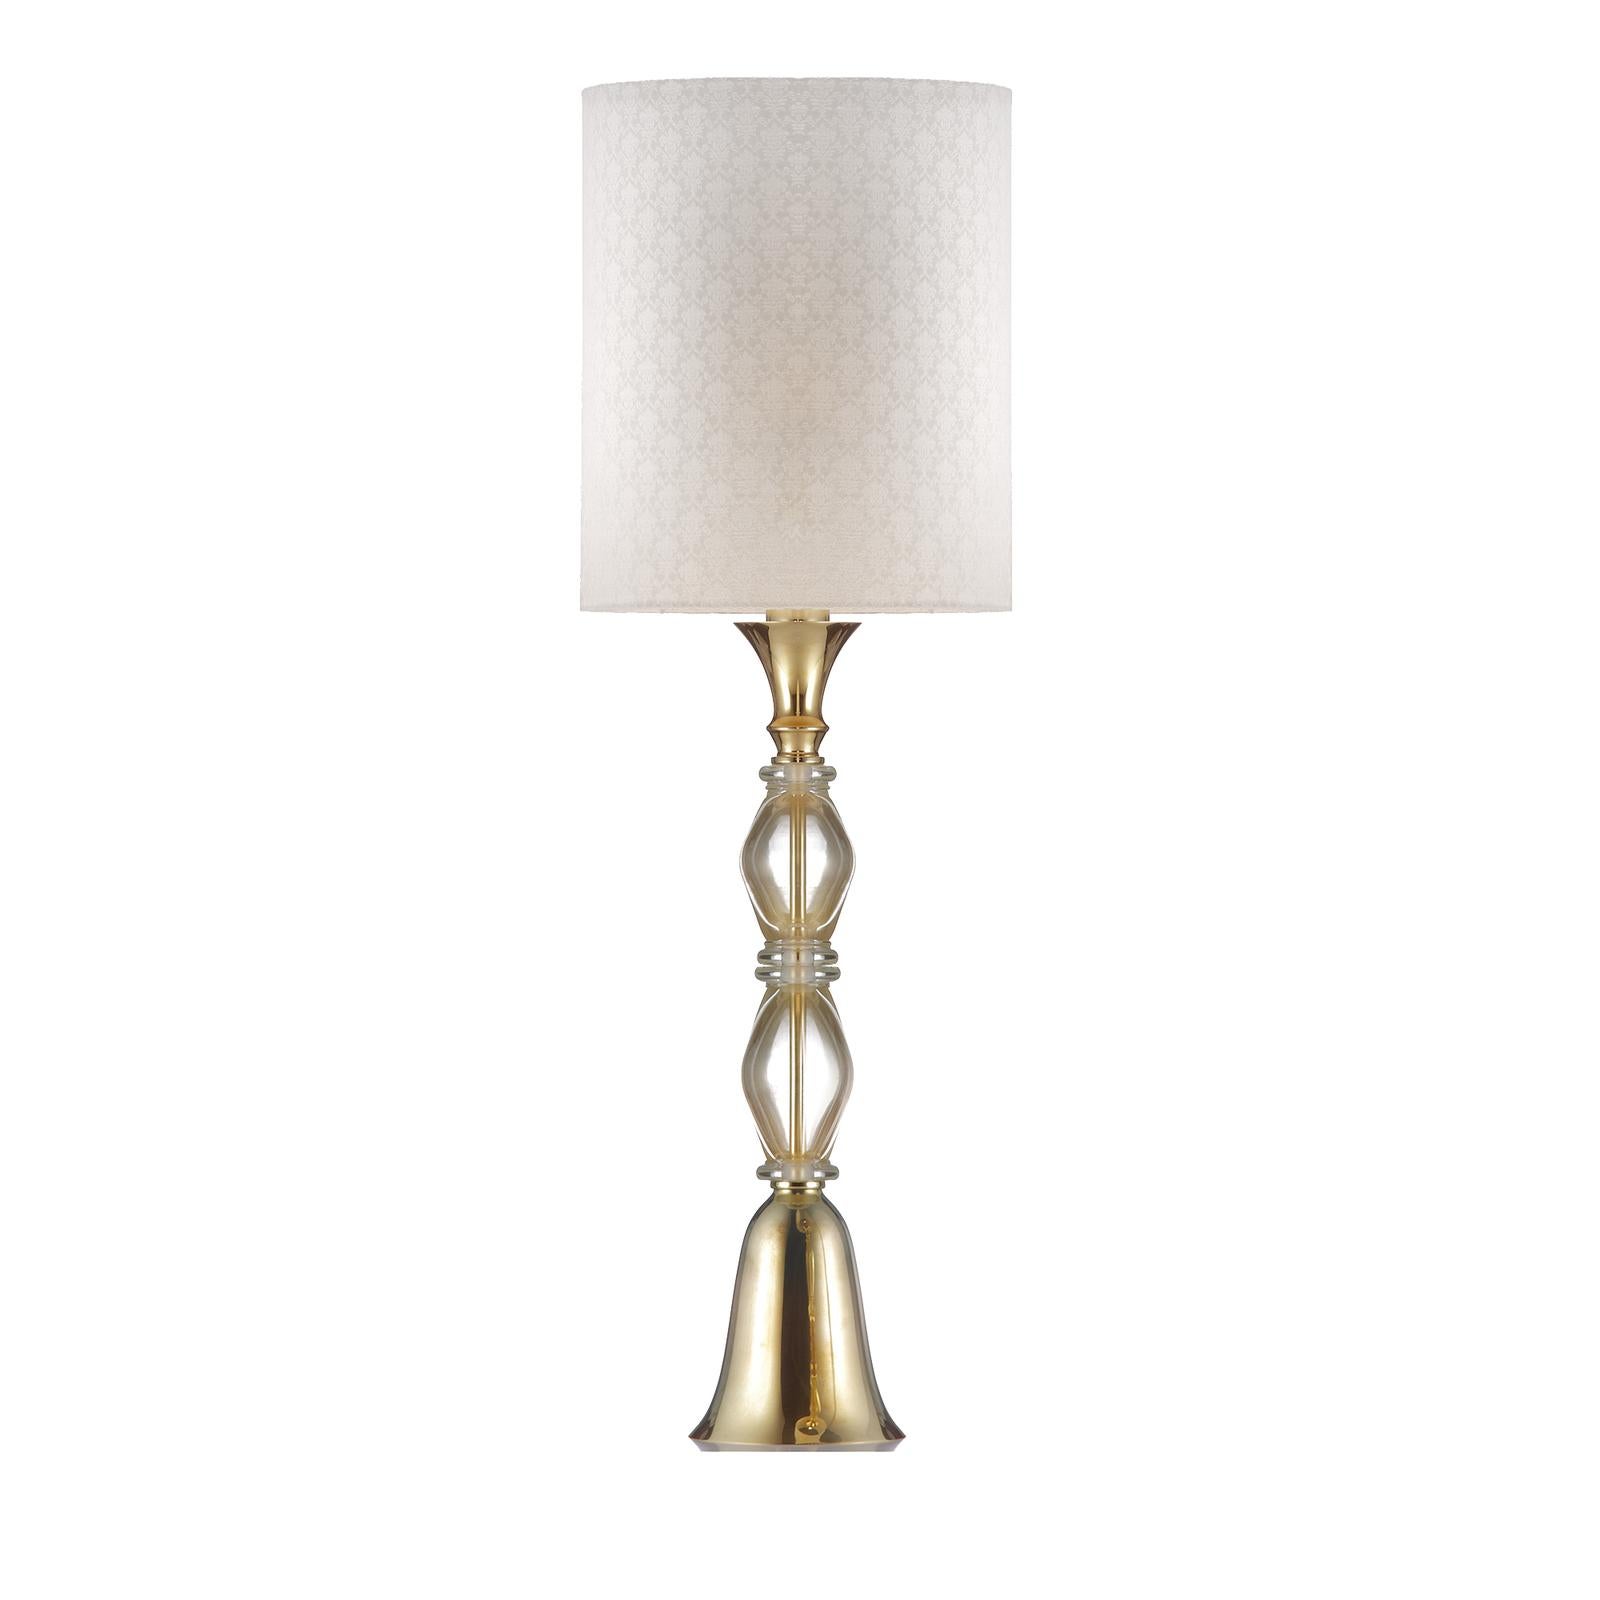 Cette exquise lampe de table flanque deux éléments centraux en verre de Murano aux courbes sinueuses en métal avec une finition dorée polie. L'effet est fascinant et enrichira avec une sophistication opulente un intérieur classique ou moderne, en